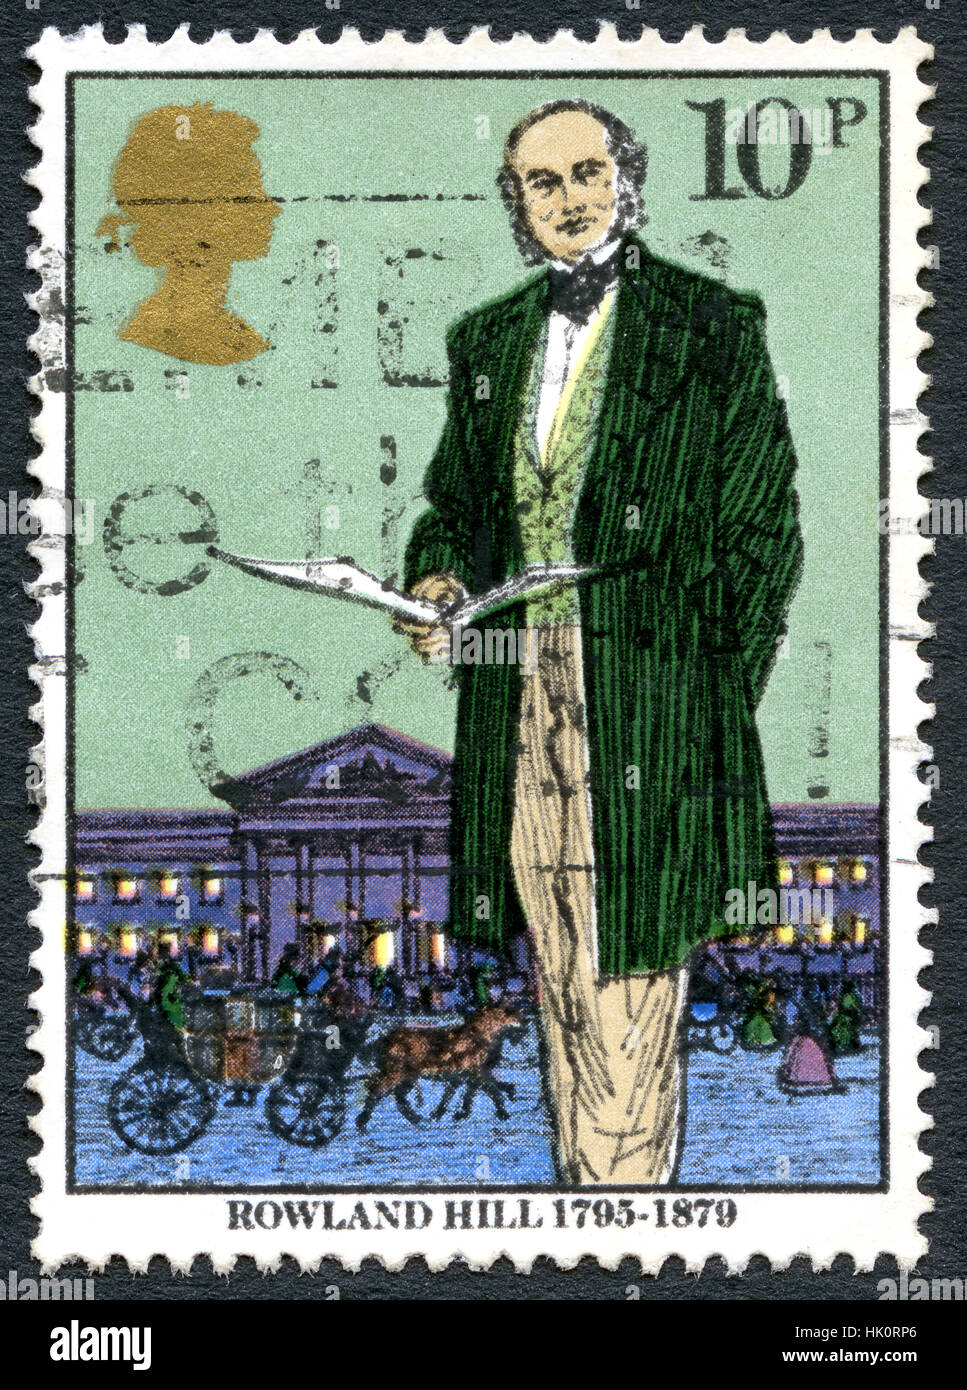 Großbritannien - ca. 1979: Eine gebrauchte Briefmarke aus dem Vereinigten Königreich, Darstellung zur Veranschaulichung der Erfinder und Sozialreformer Rowland Hill, ca. 1979. Stockfoto